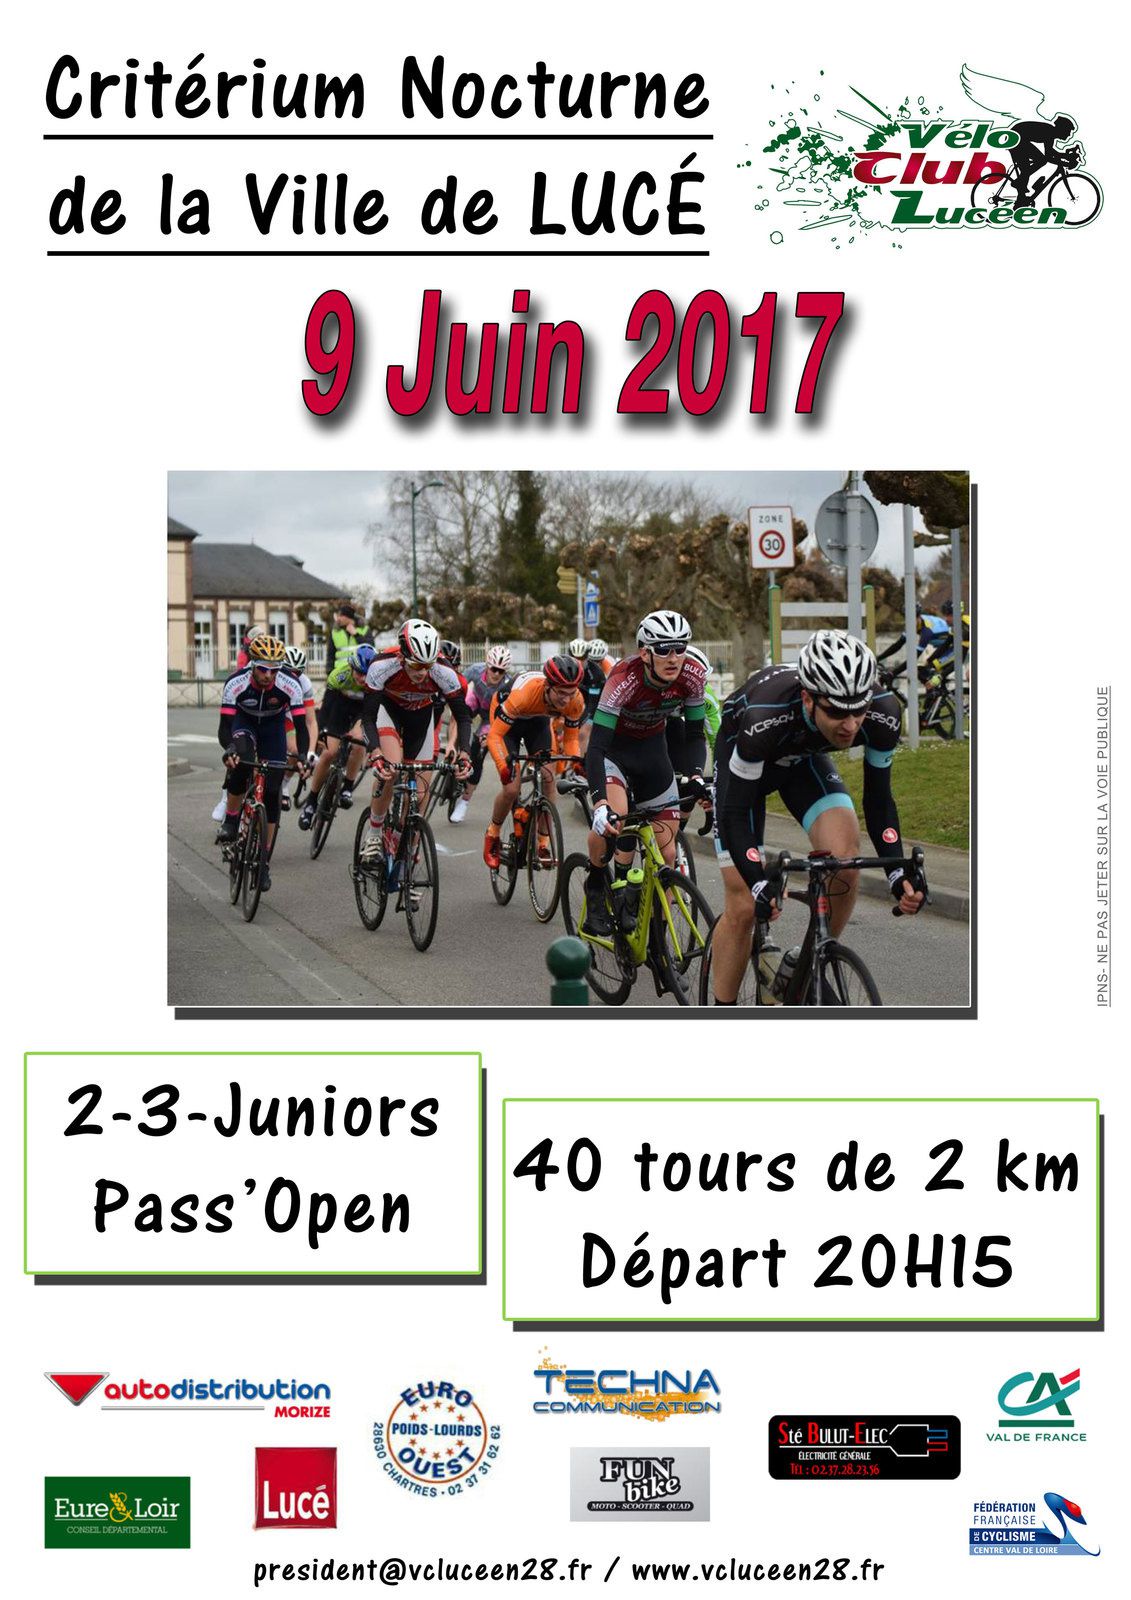 Les critériums en nocturne au mois de juin 2017 en Eure et Loir